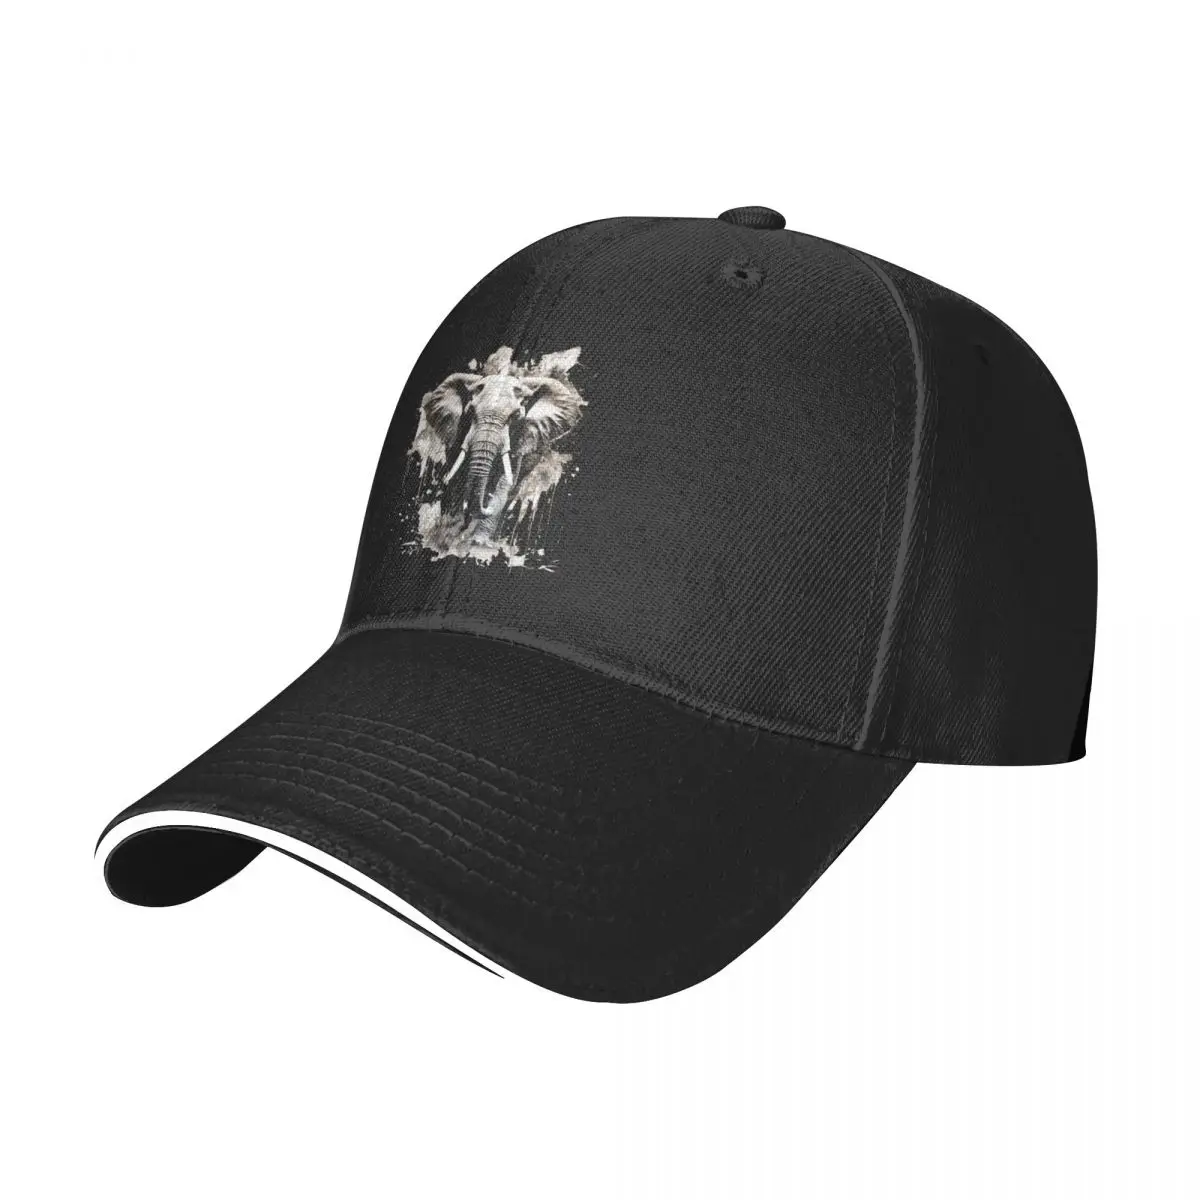 

Бейсбольная кепка с рисунком слона, университетские хип-хоп шляпы, дешевые мужские бейсболки на заказ